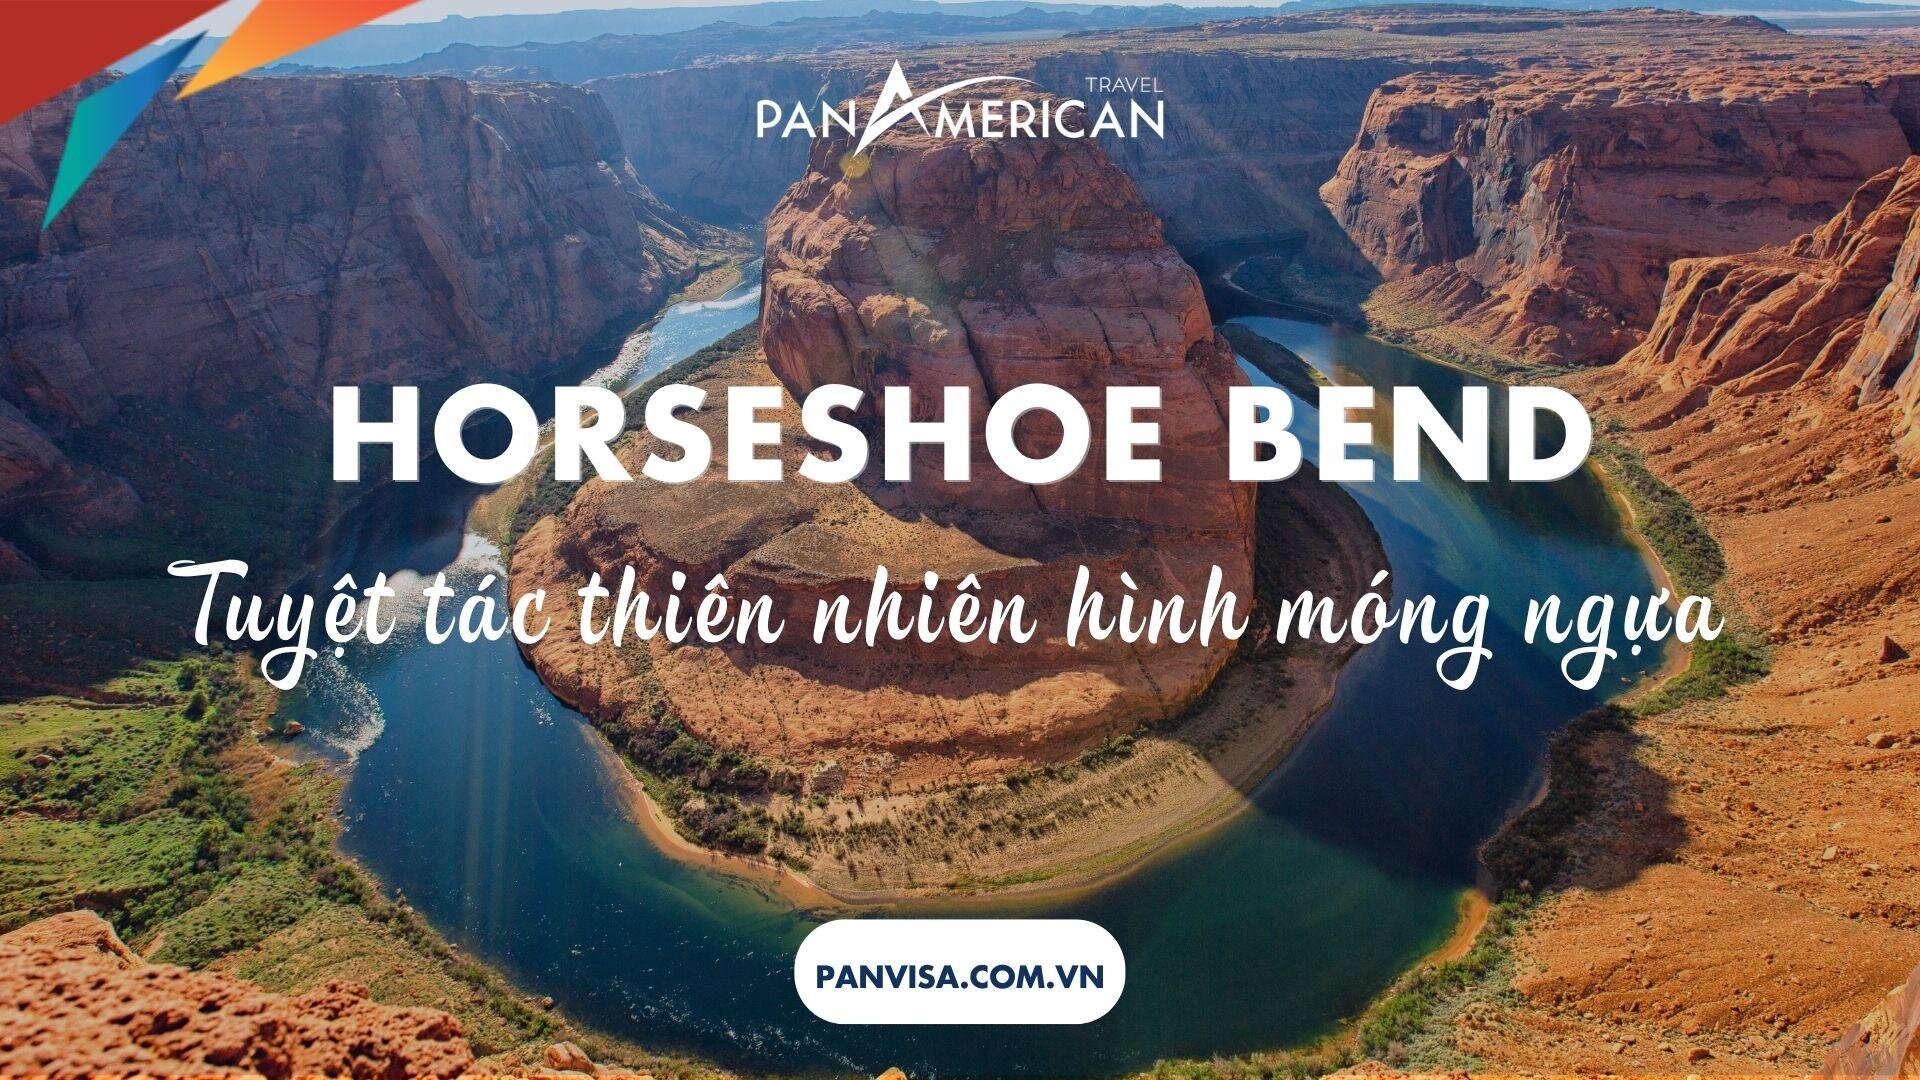 Horseshoe Bend - Tuyệt tác thiên nhiên kỳ diệu hình móng ngựa